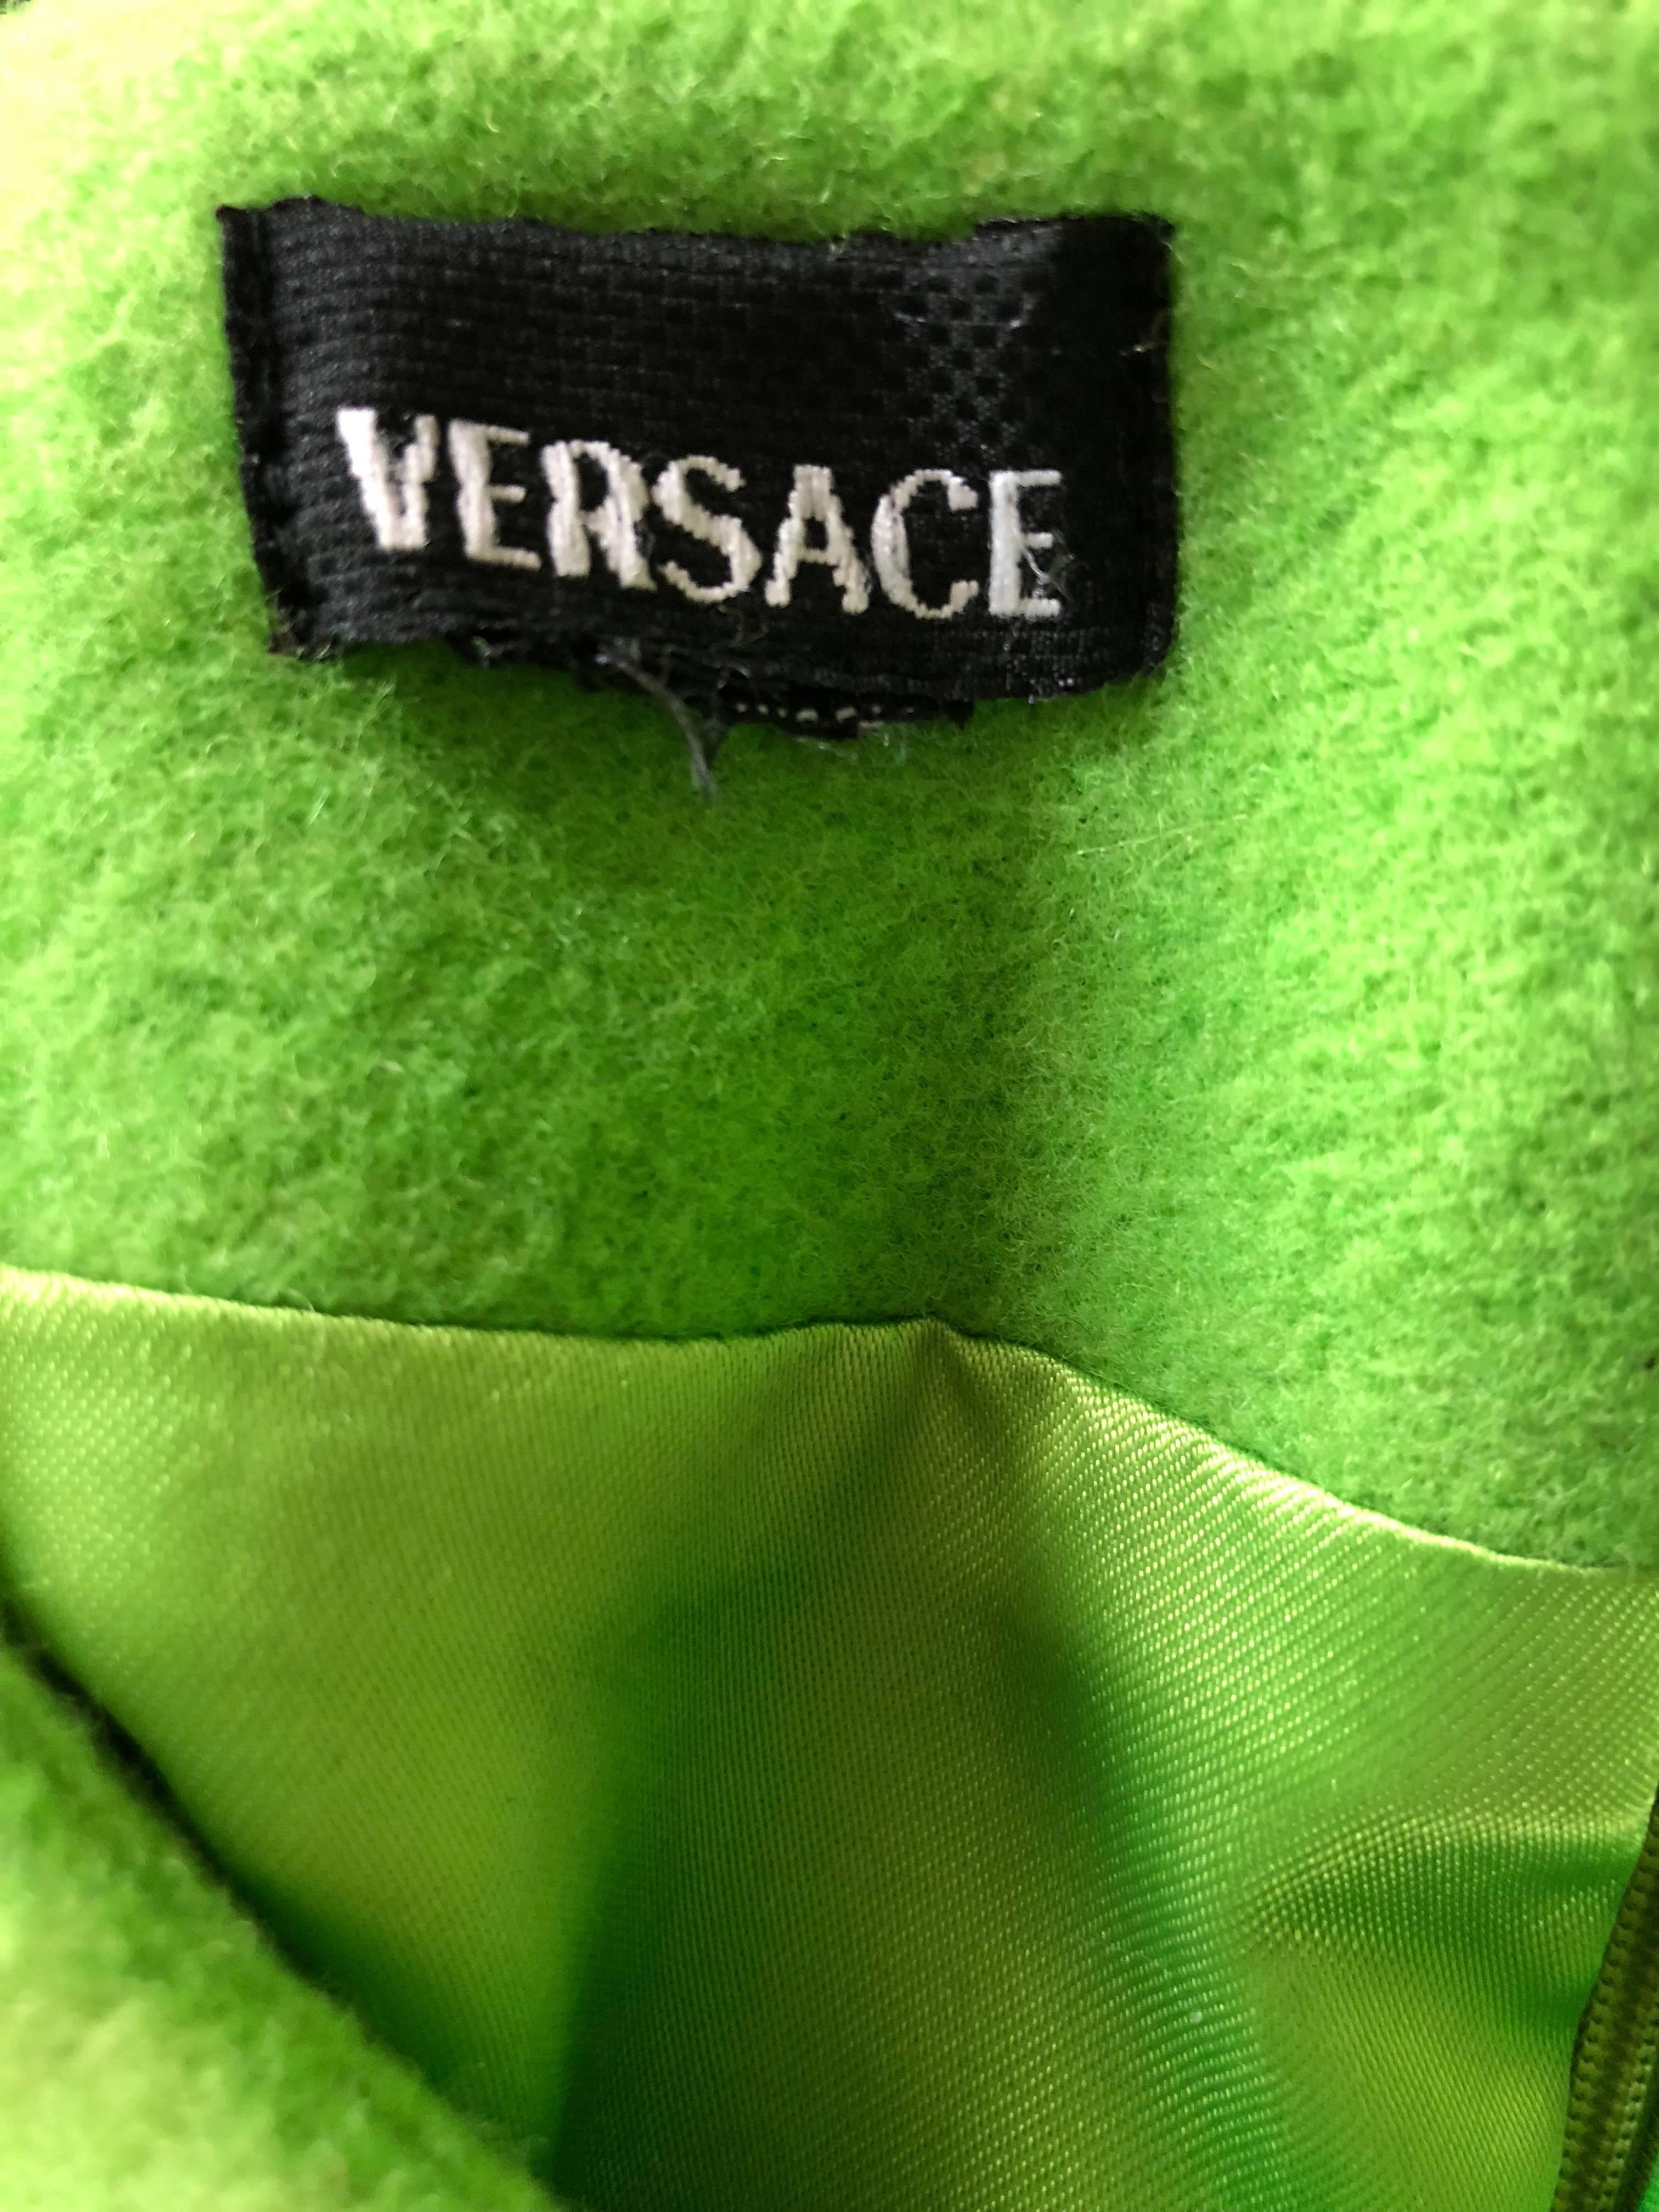 Amazing début des années 1990 GIANNI VERSACE néon vert mini robe de laine ! En laine vierge douce, avec des boules de métal doré en forme de triangles au-dessus du buste. Fermeture éclair cachée dans le dos avec fermeture à crochets. Une coupe